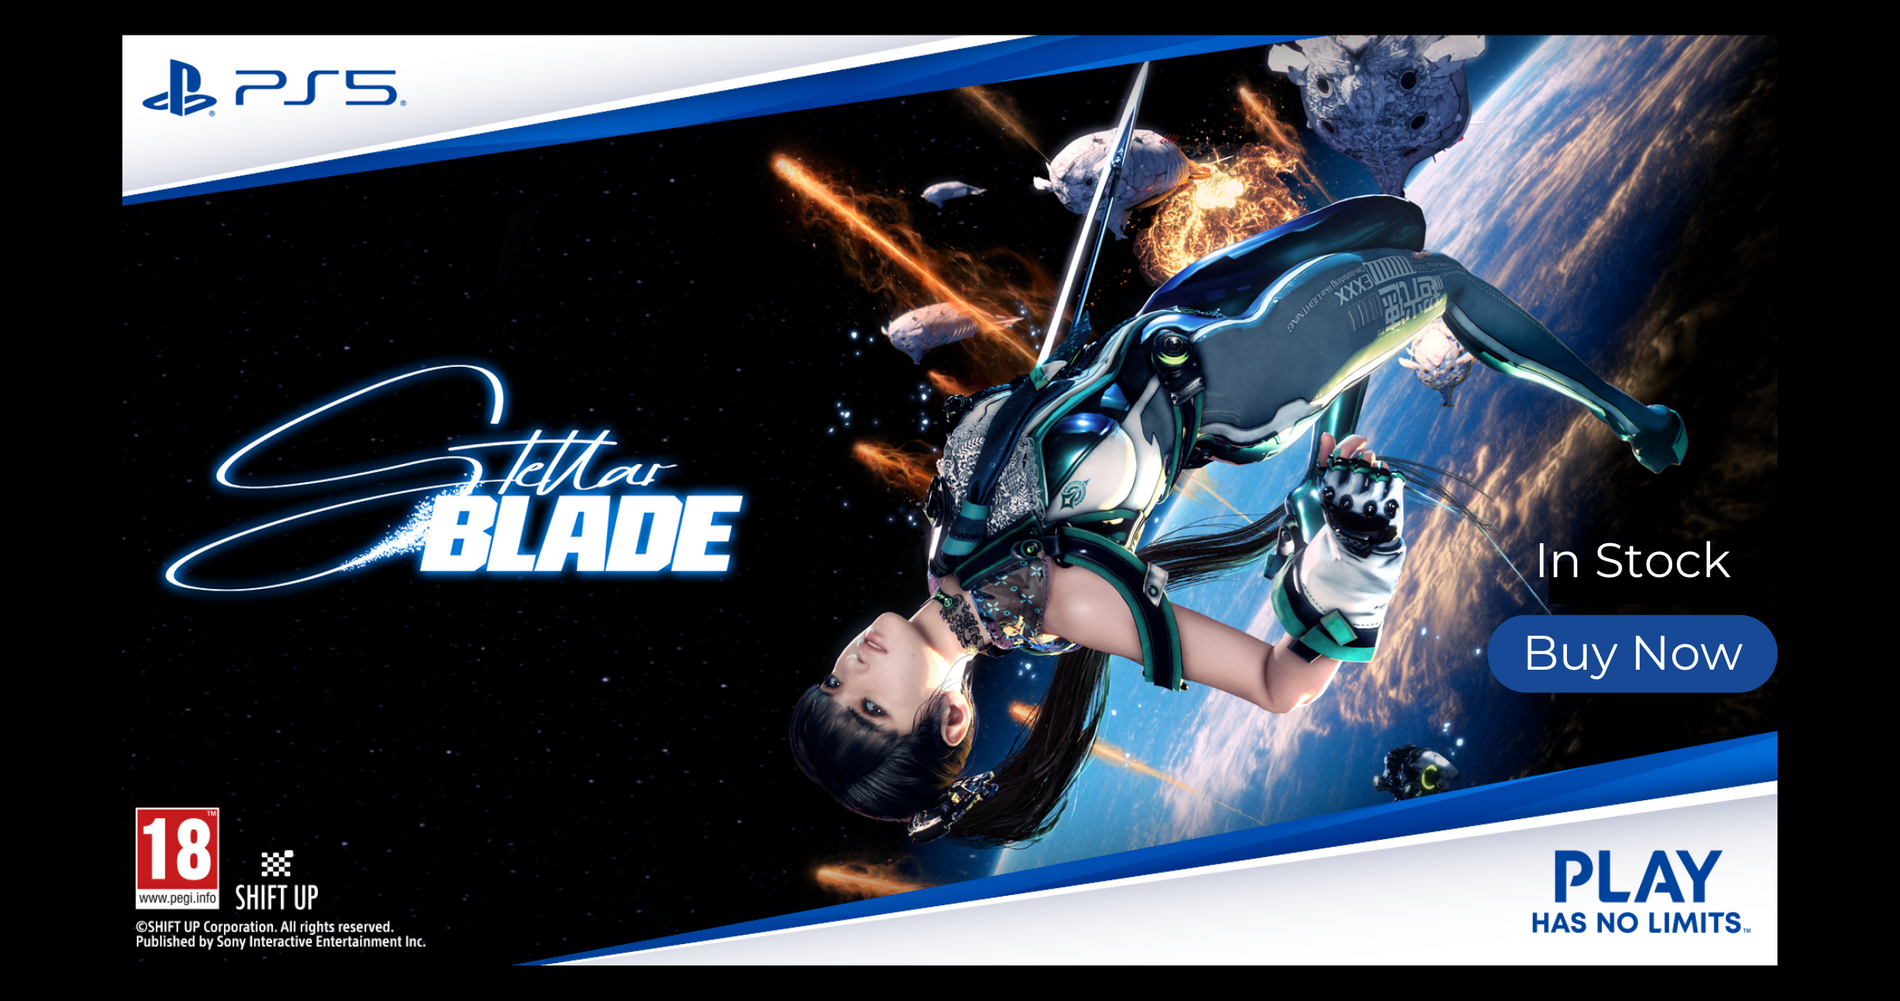 Buy now tellar blade banner